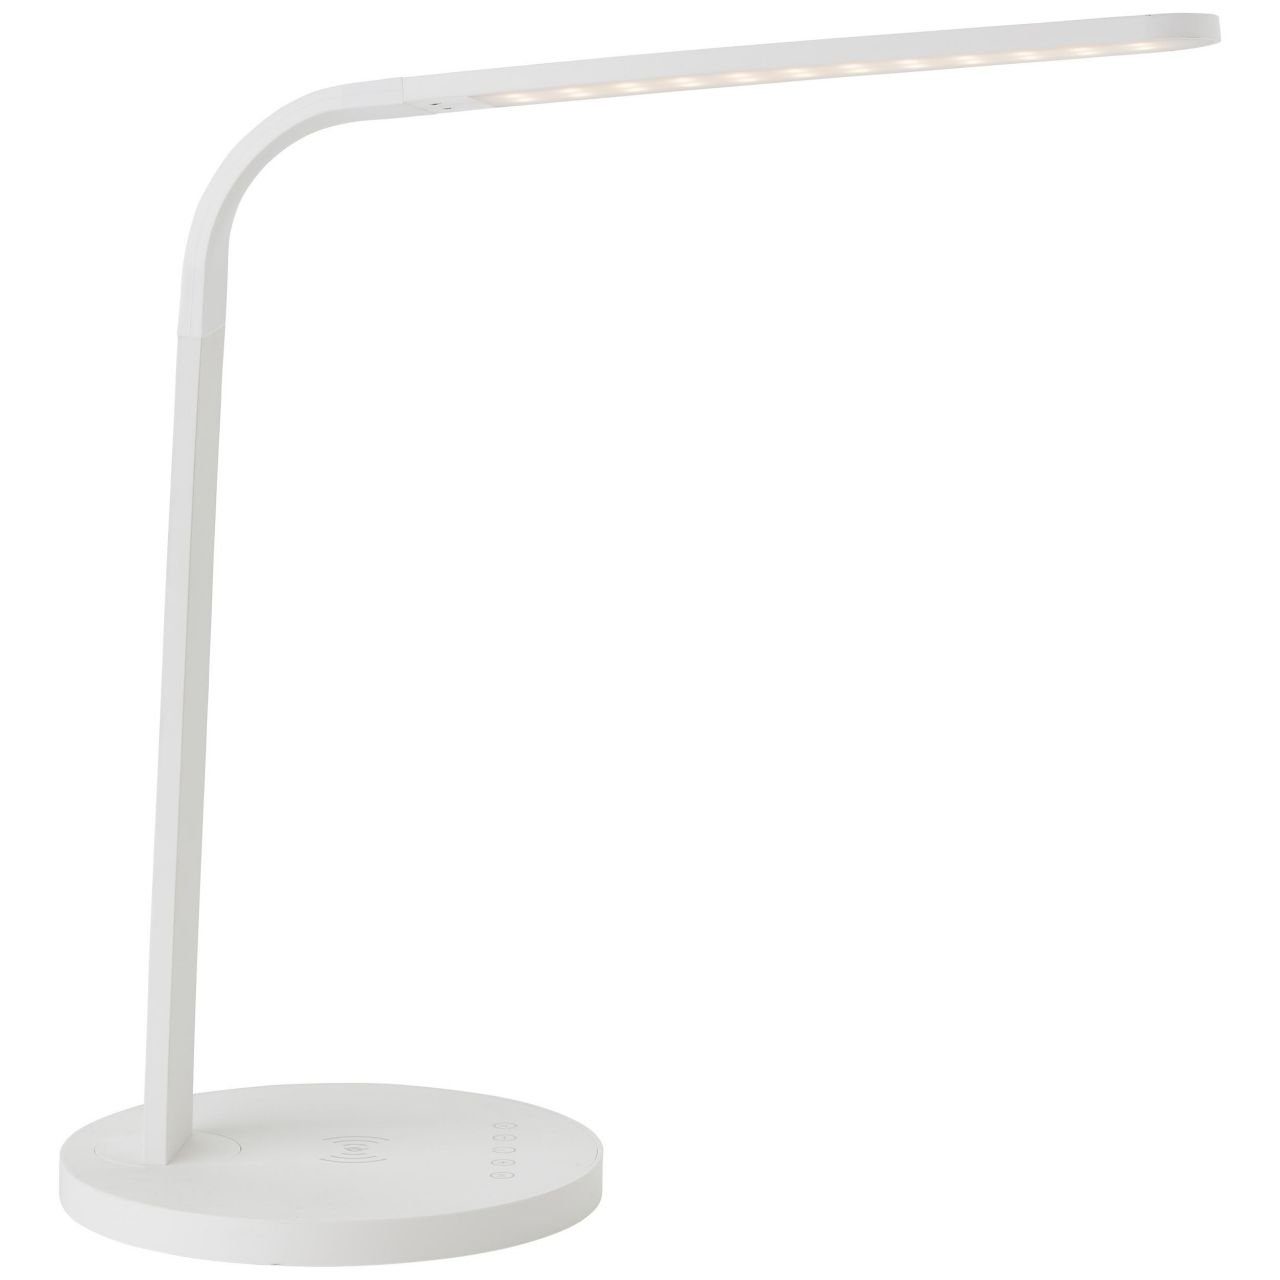 LED Lampe, Idelle, Tischleuchte 2900-5300K, weiß, Induktionsladeschale 1x LED Brilliant mit Idelle i Tischleuchte